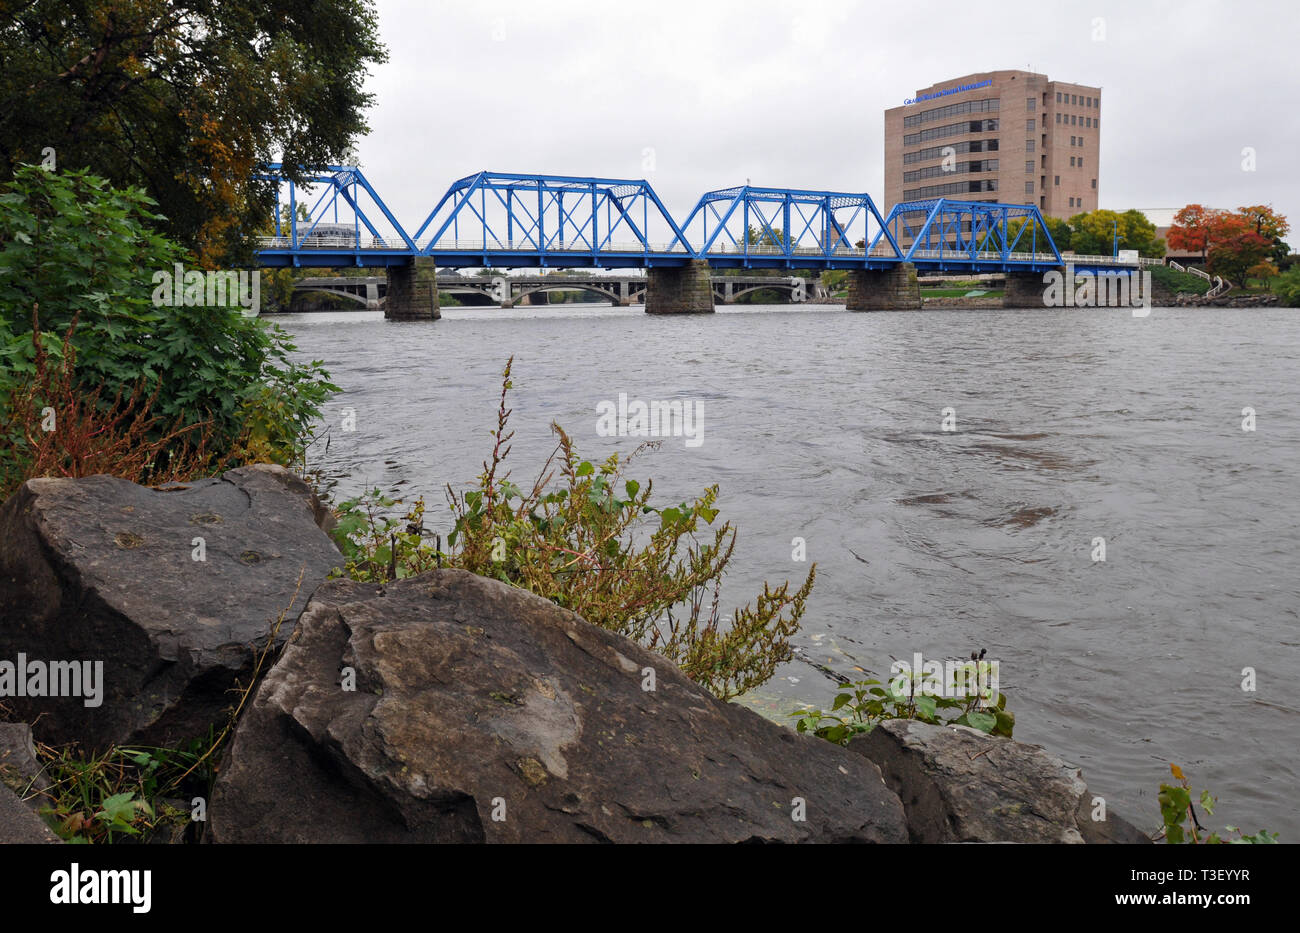 Enjambant la rivière Grand, le Blue Bridge est un monument à Grand Rapids, Michigan. Construit en 1892 comme un pont de chemin de fer, c'est maintenant un passage piétonnier. Banque D'Images